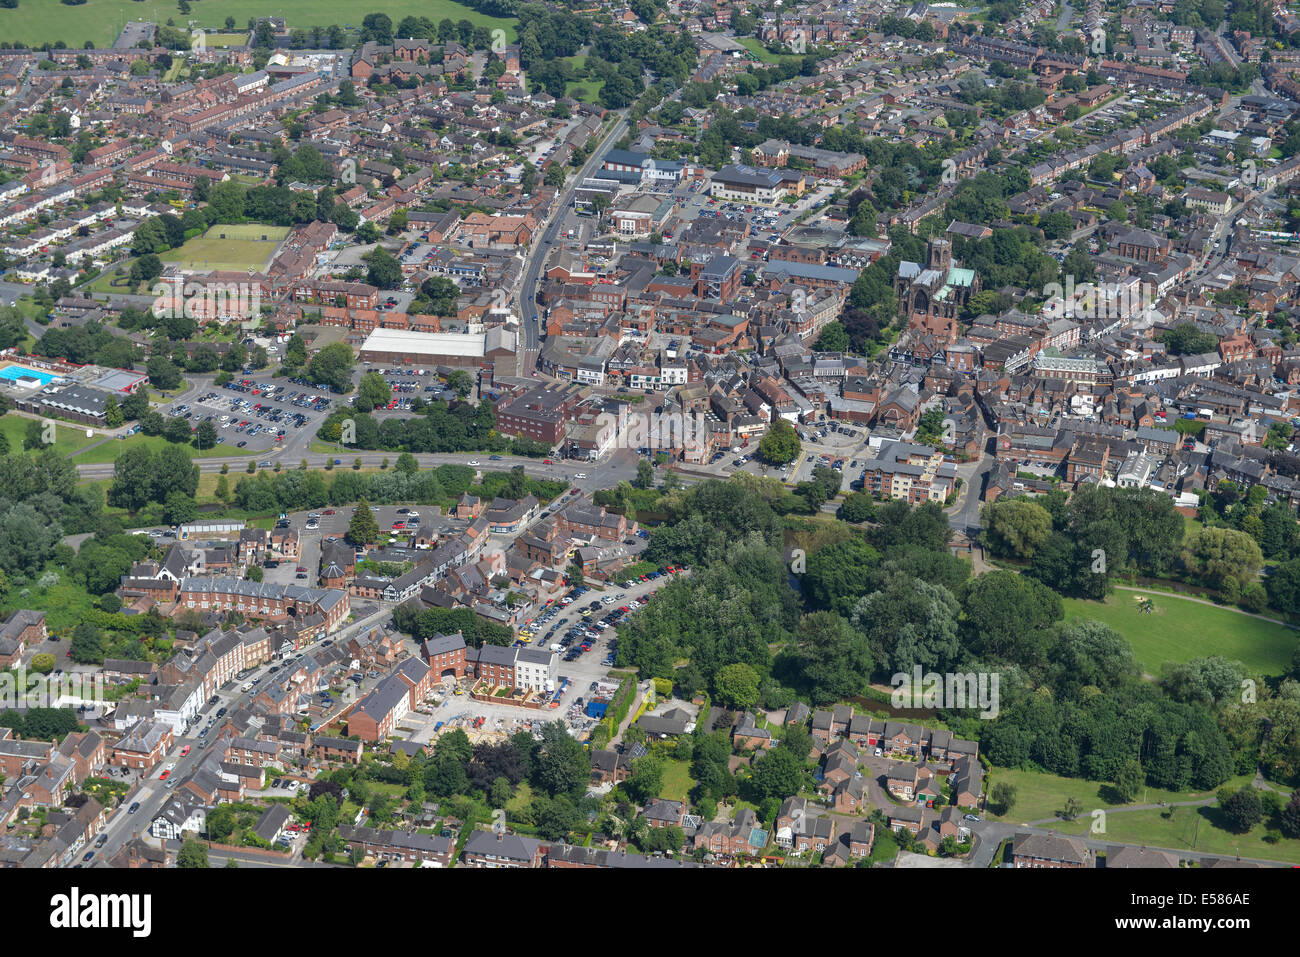 Une image montrant le centre-ville de Nantwich dans Cheshire, Royaume-Uni Banque D'Images